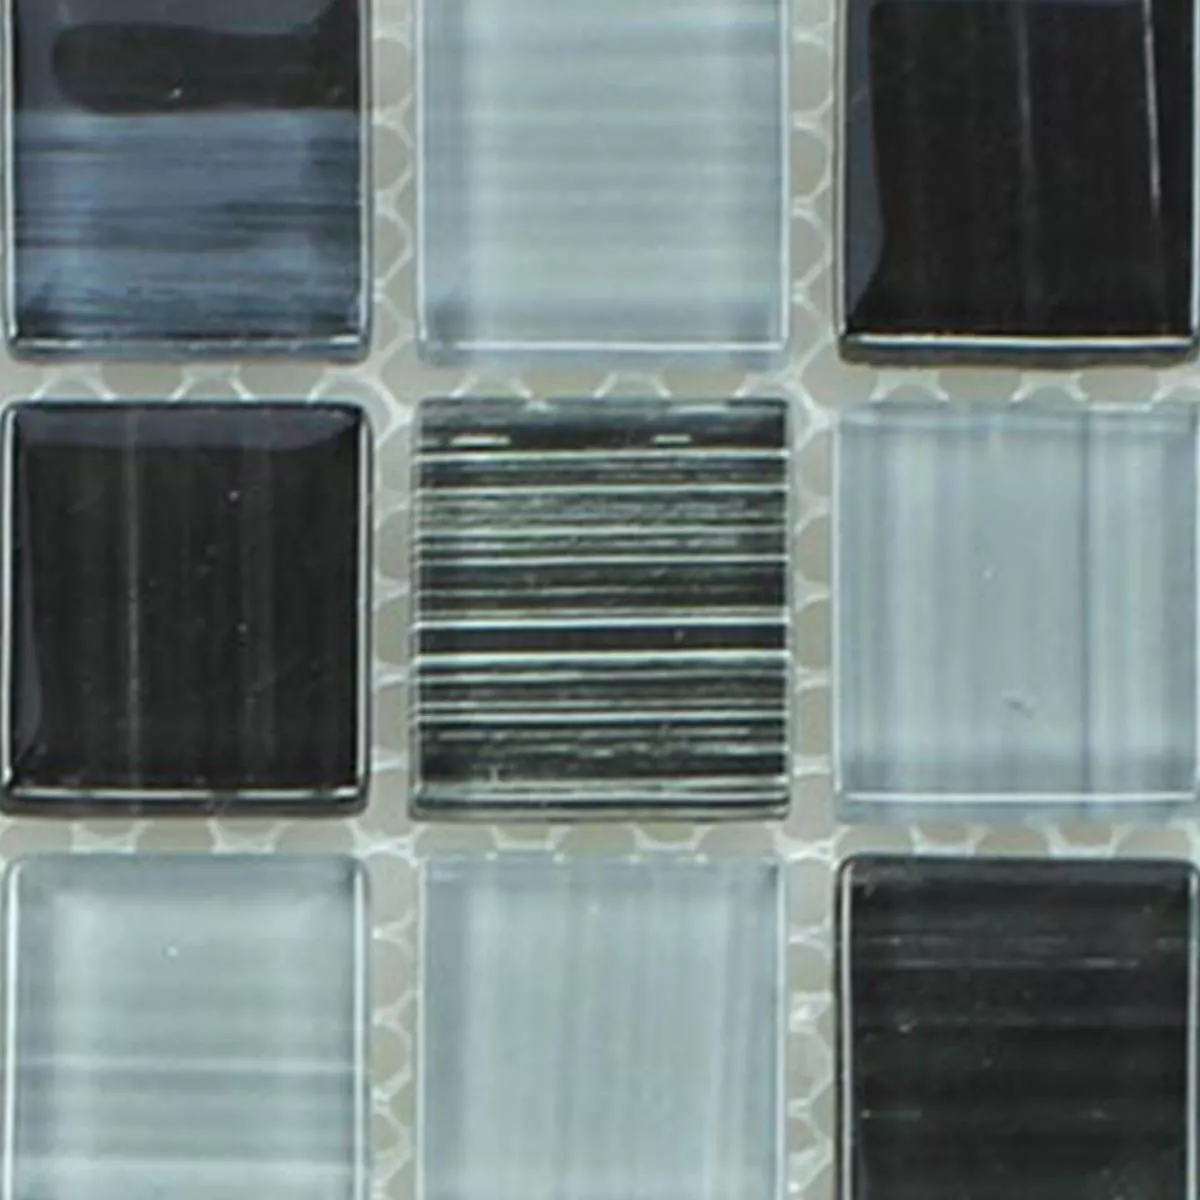 Próbka Mozaika Szklana Płytki Linia Czarny Biały 